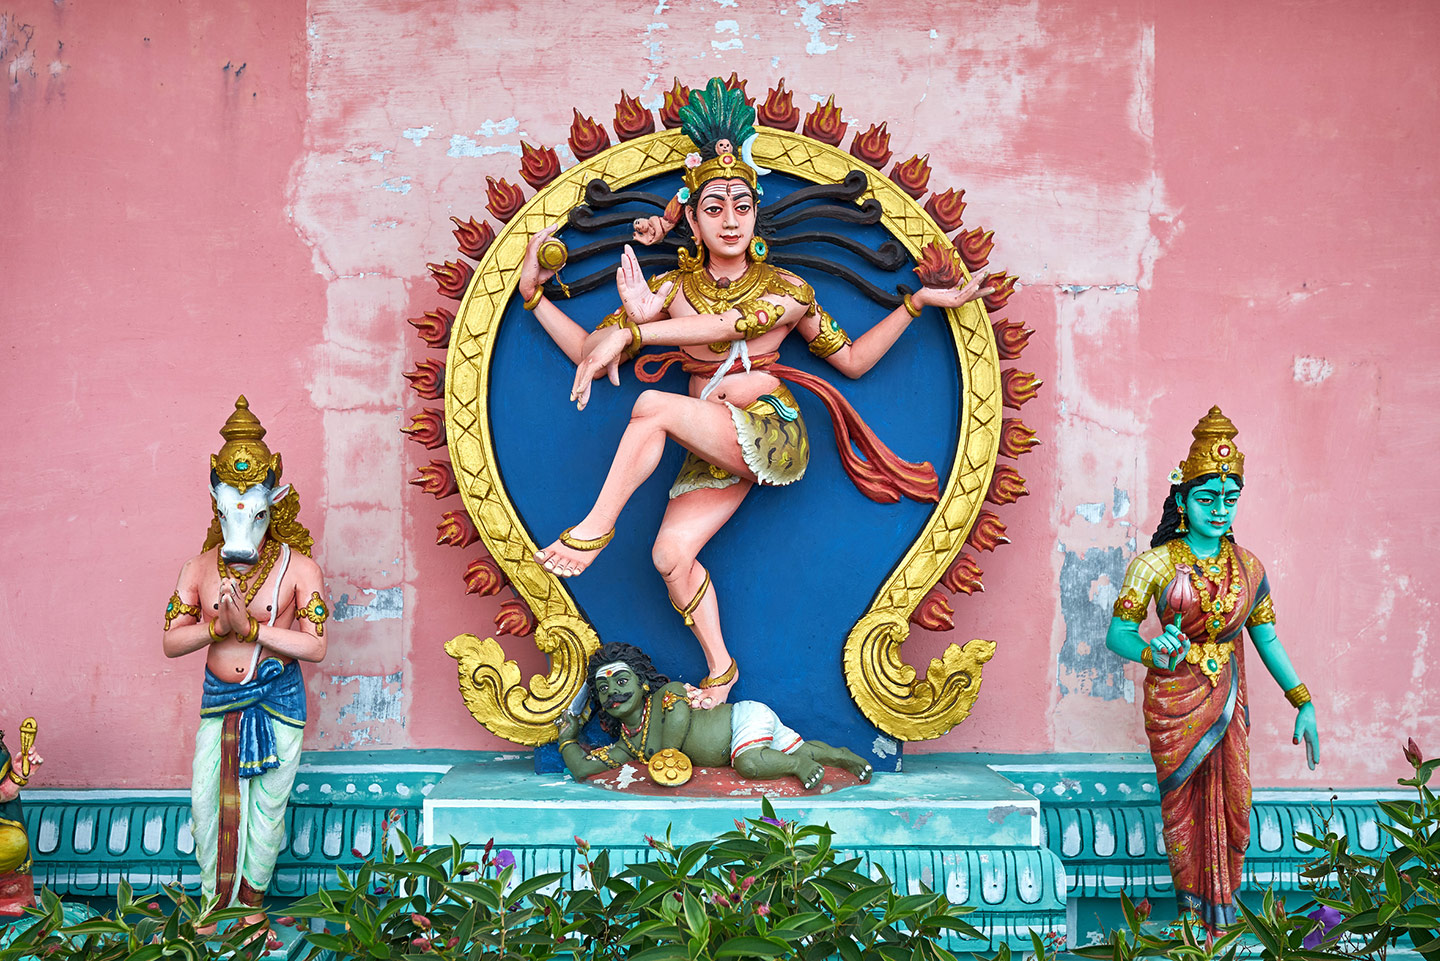 Farbenfrohe Statuen der Hindu-Gottheiten Shiva, Nandi und Parvati in einem Tempel